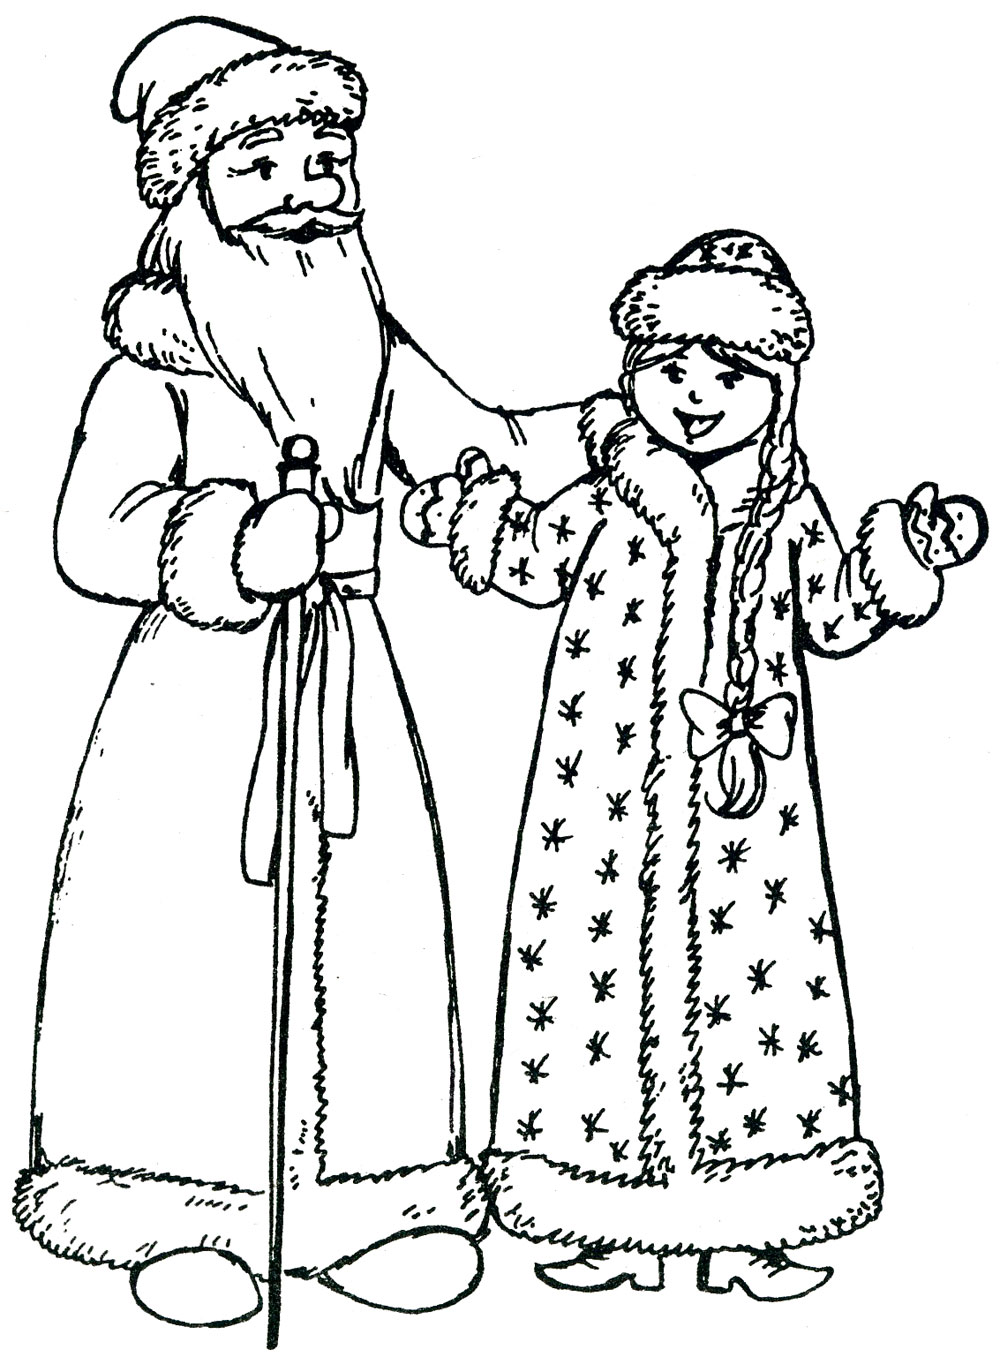 Раскраски Дед Мороз Новый год. Дед Мороз раскраска для детей скачать